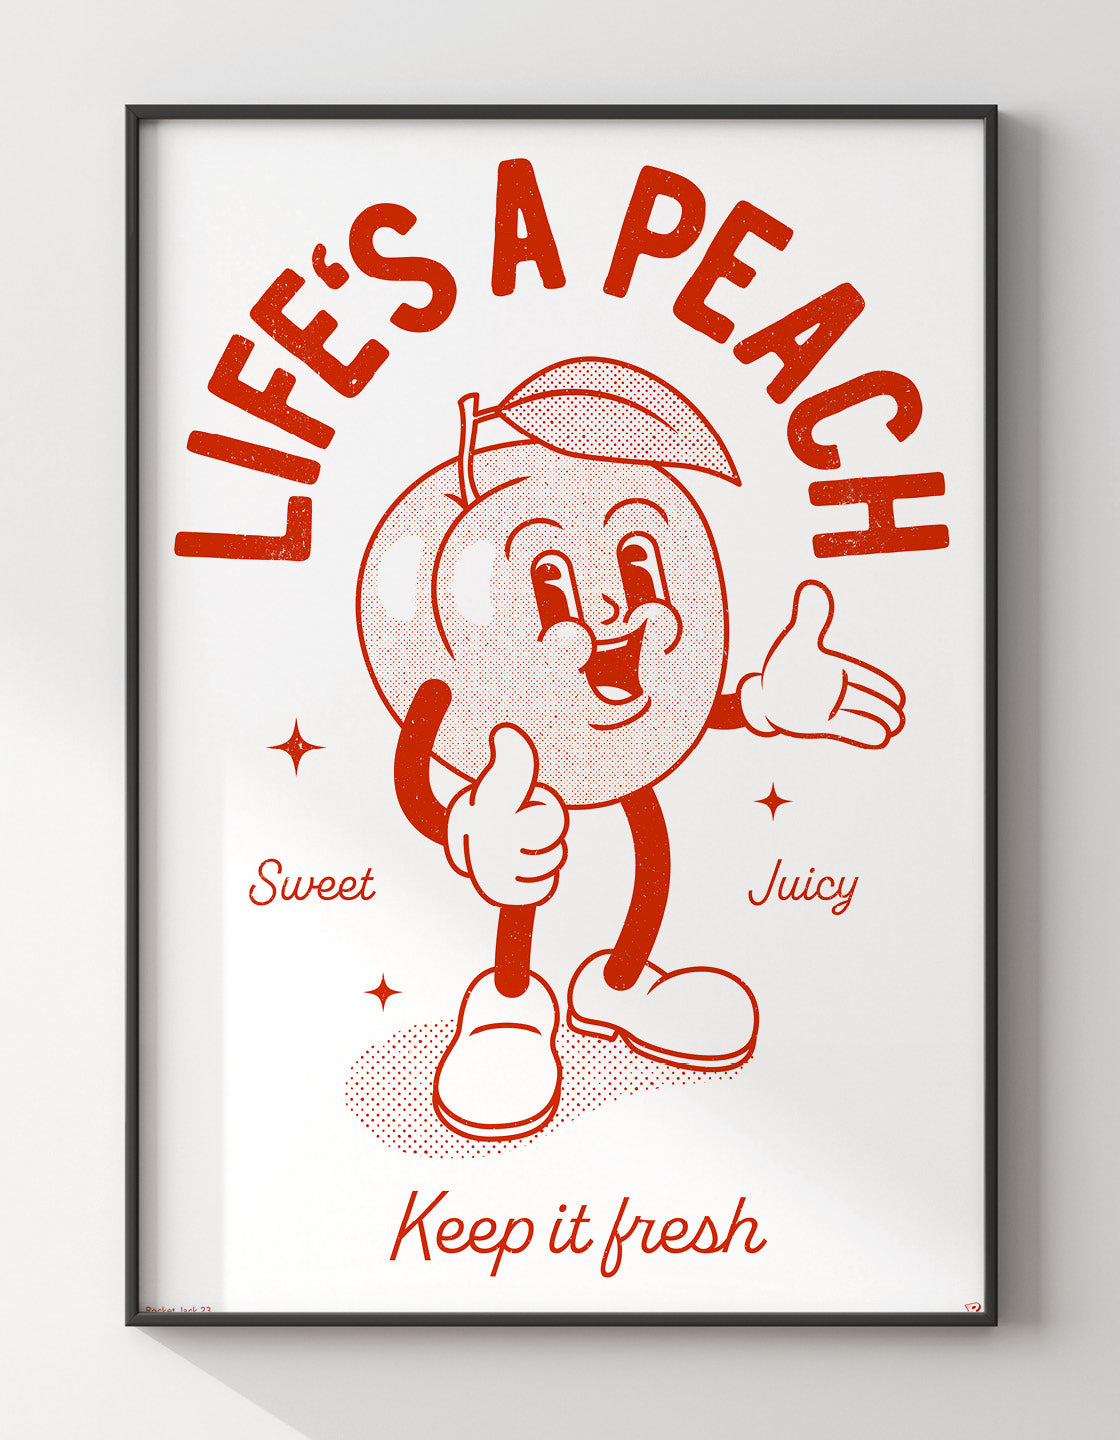 Life's a peach